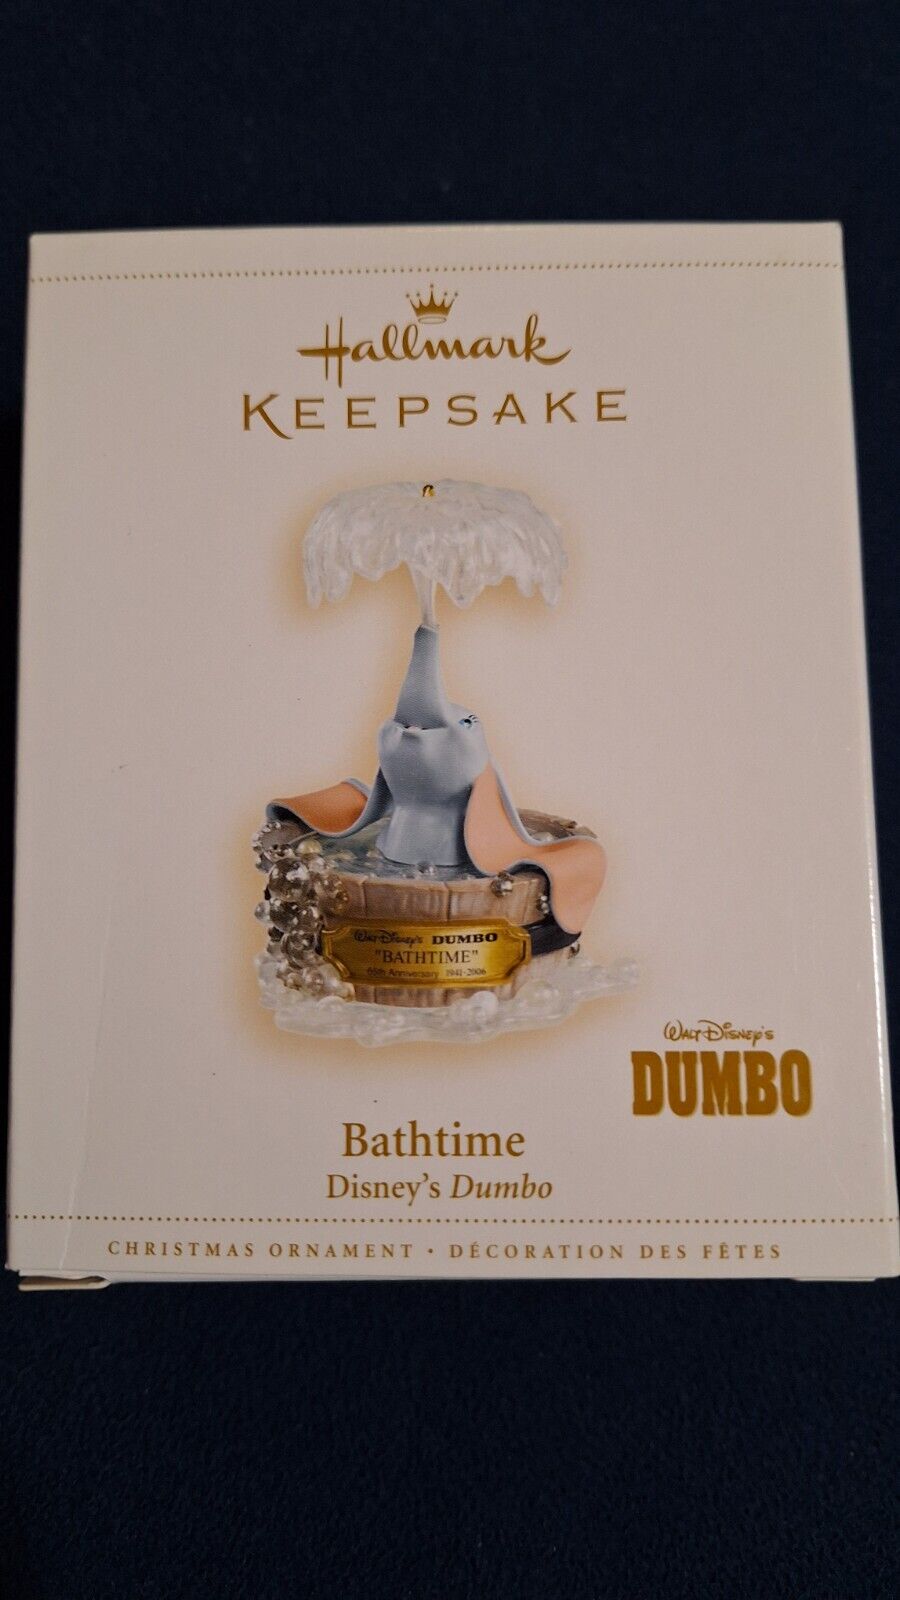 2006 Disney Hallmark Keepsake Dumbo ornament Bathtime.  In box. 